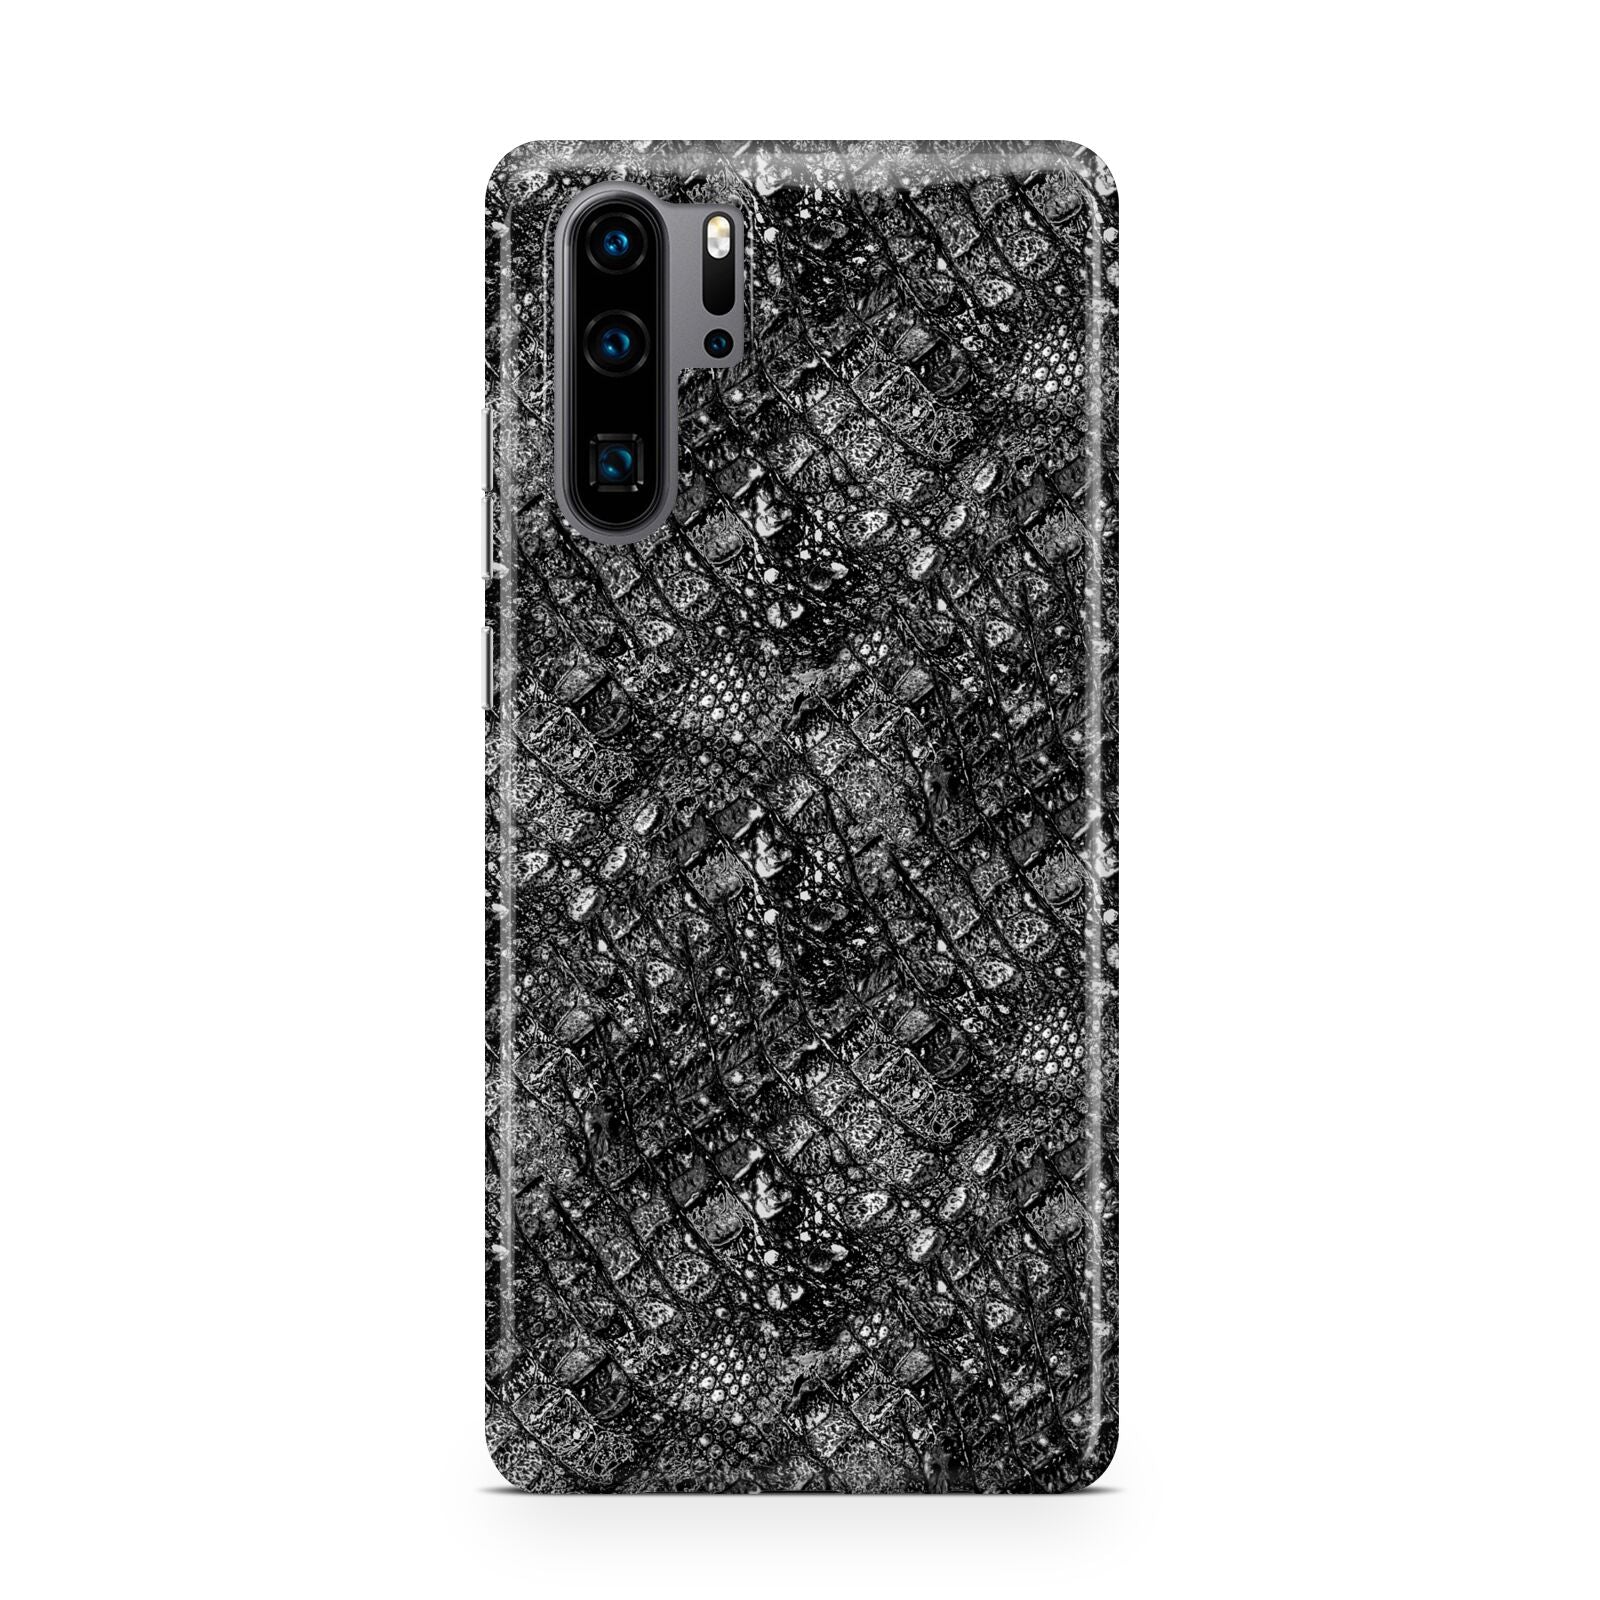 Snakeskin Design Huawei P30 Pro Phone Case